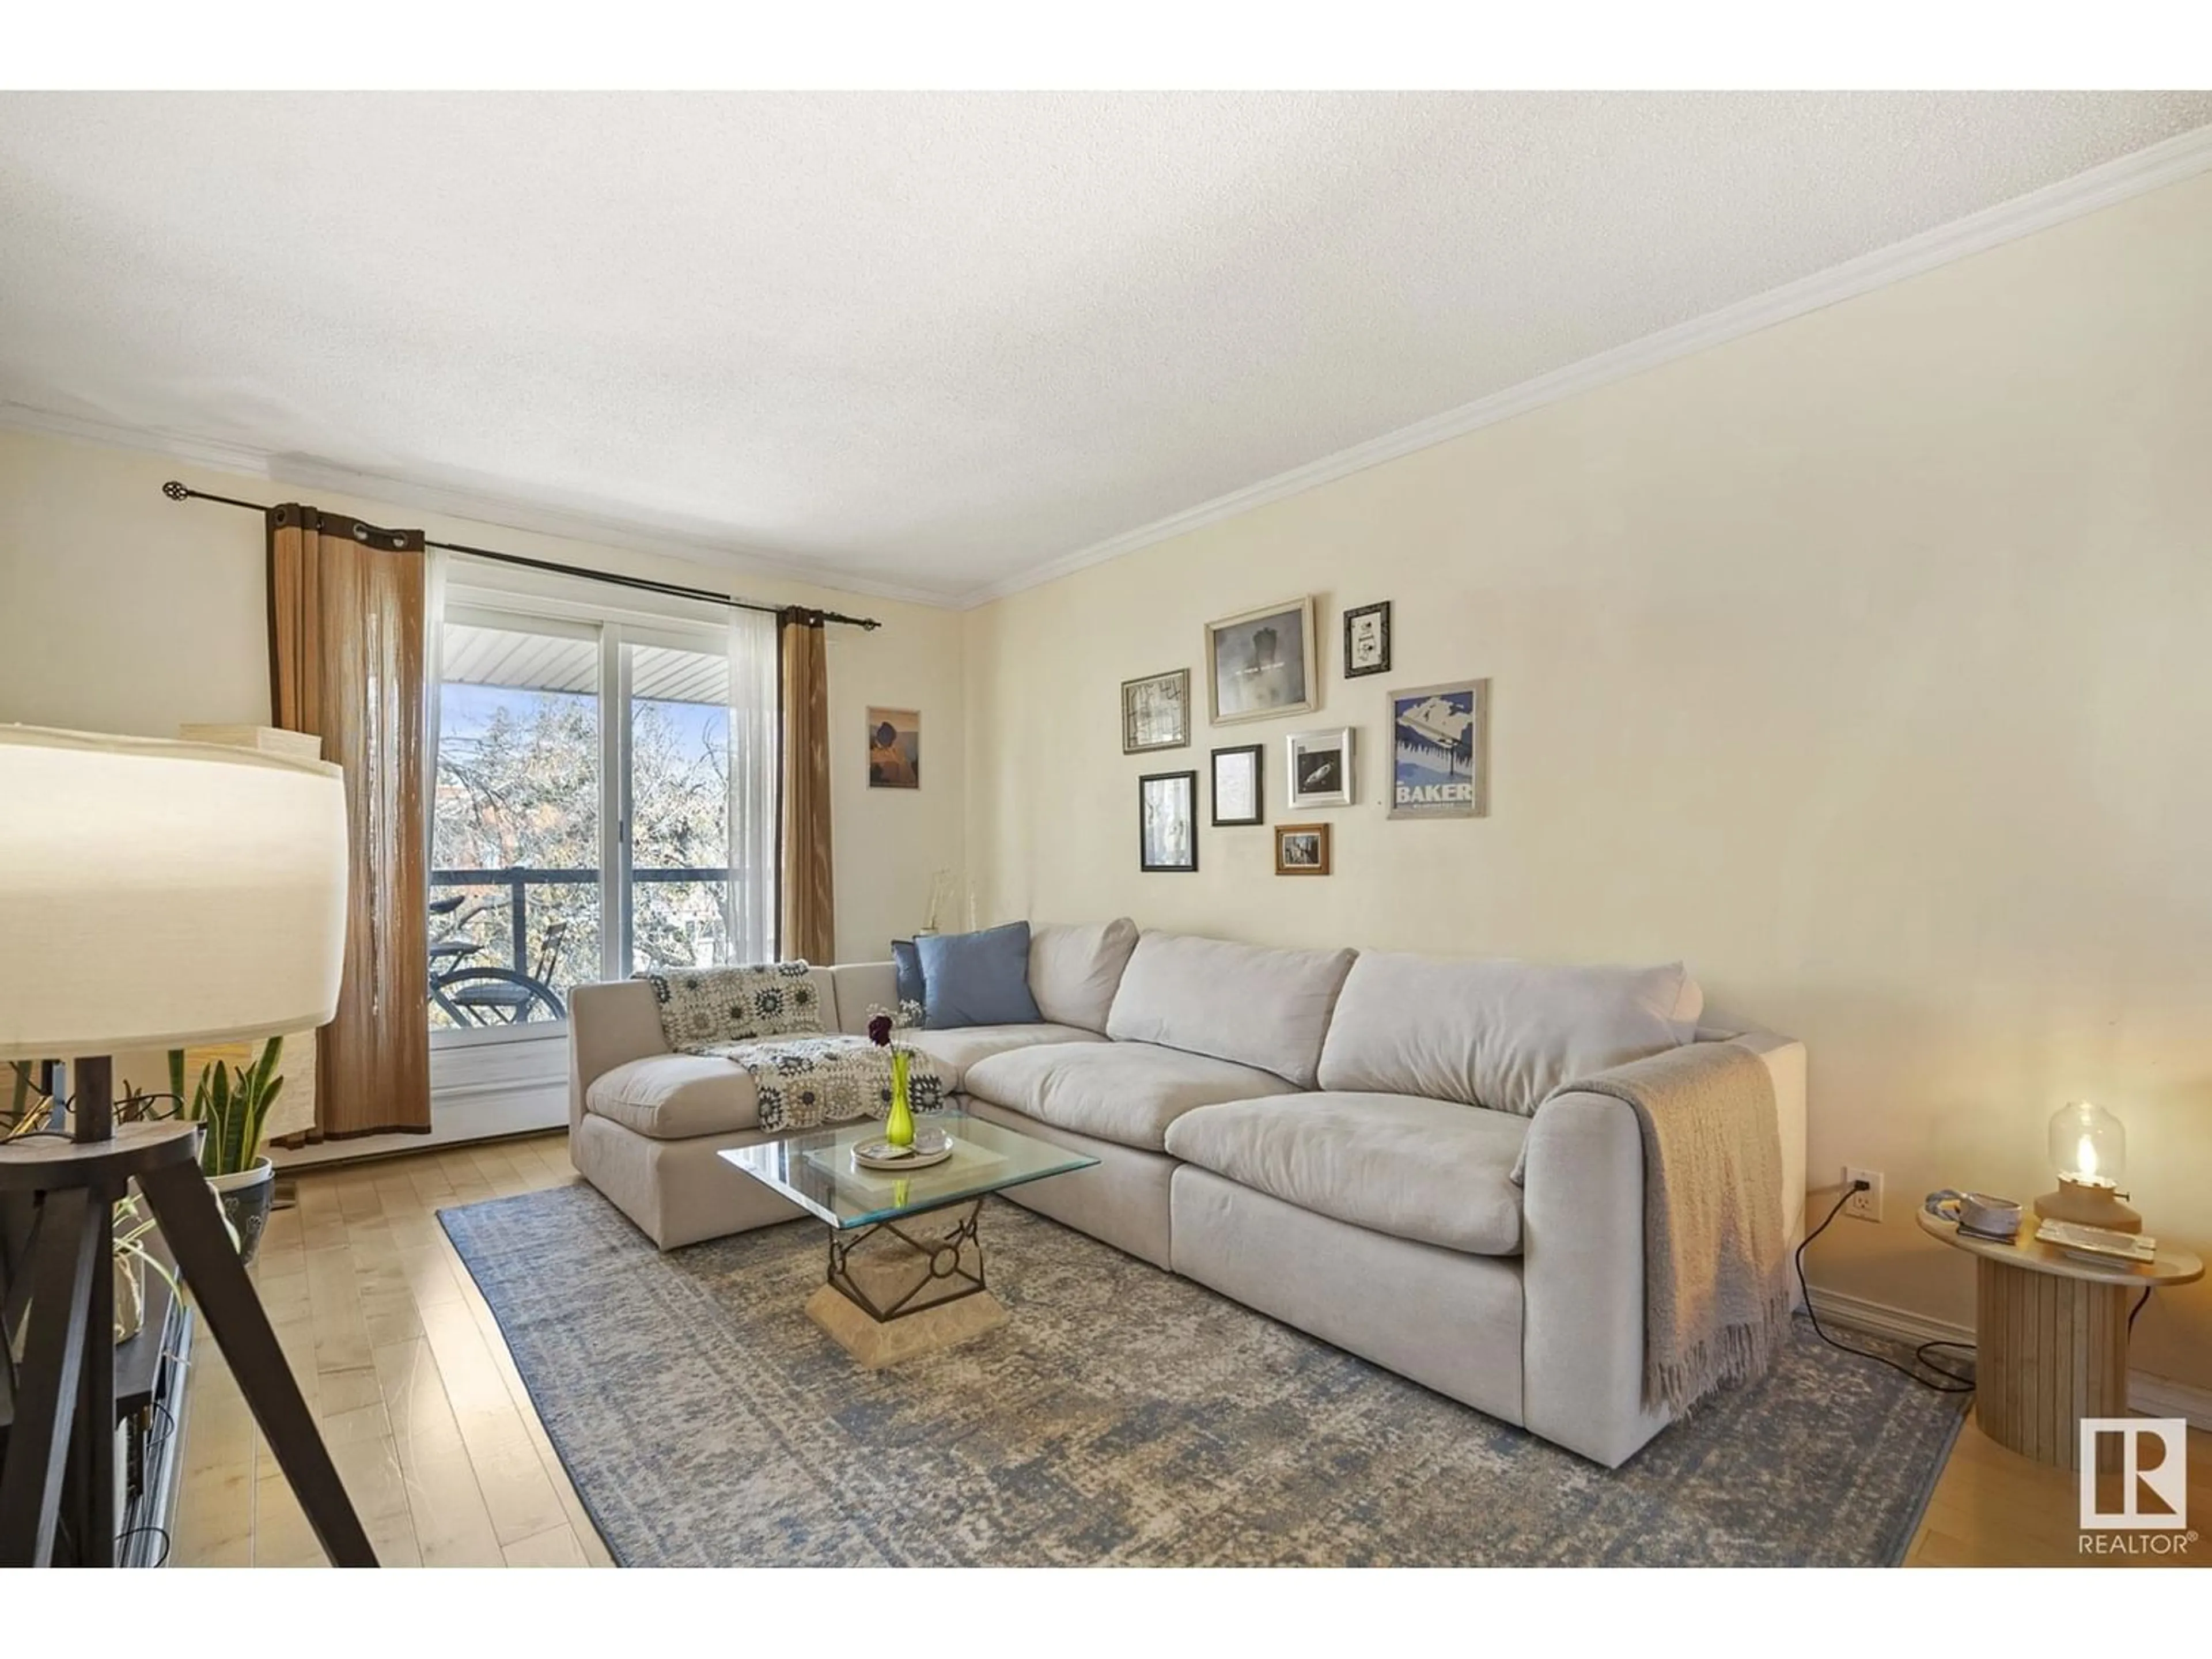 Living room for #405 10547 83 AV NW, Edmonton Alberta T6E2E1